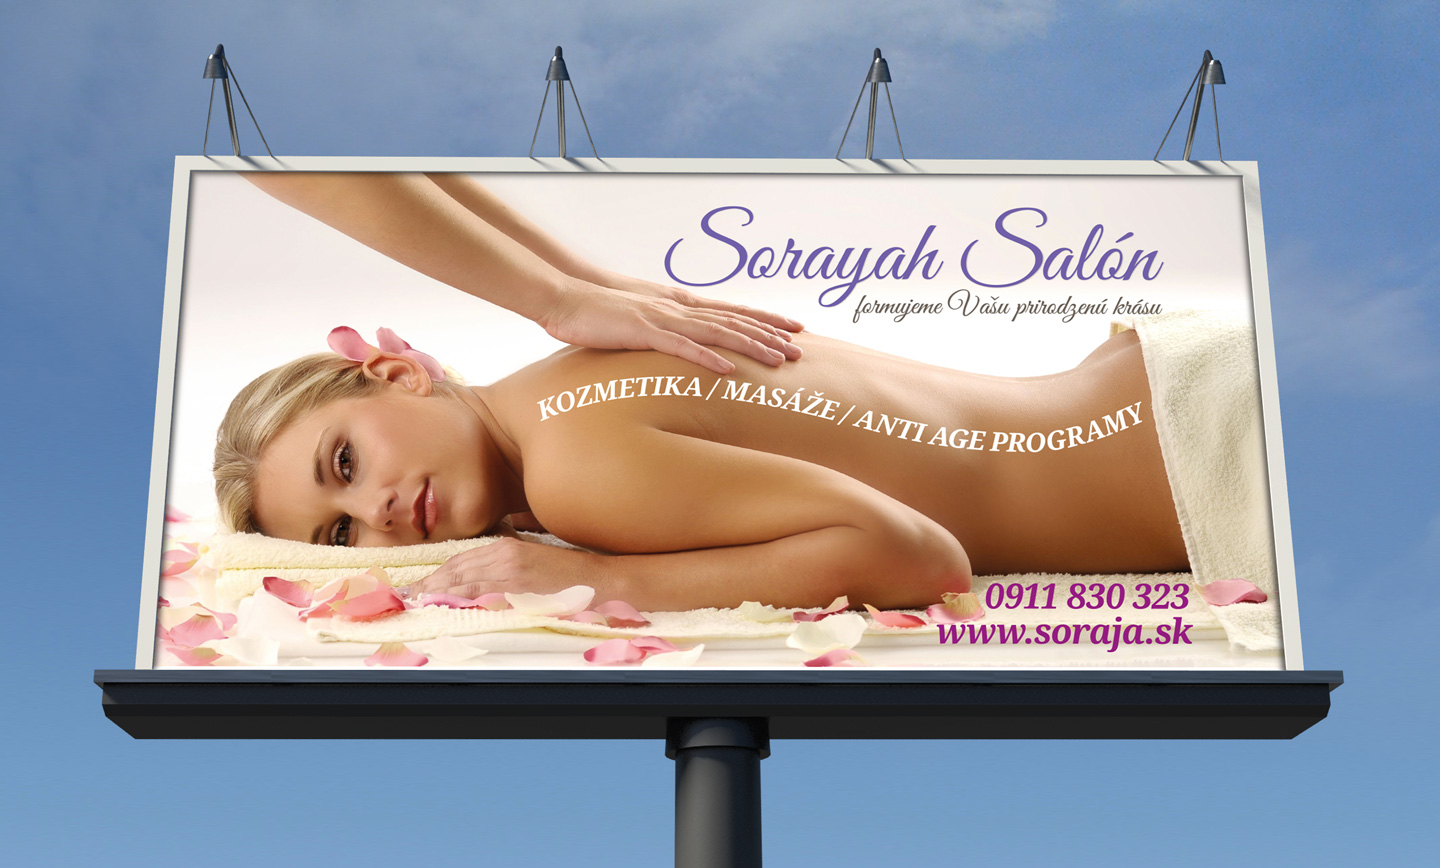 Sorayah Salón billboard